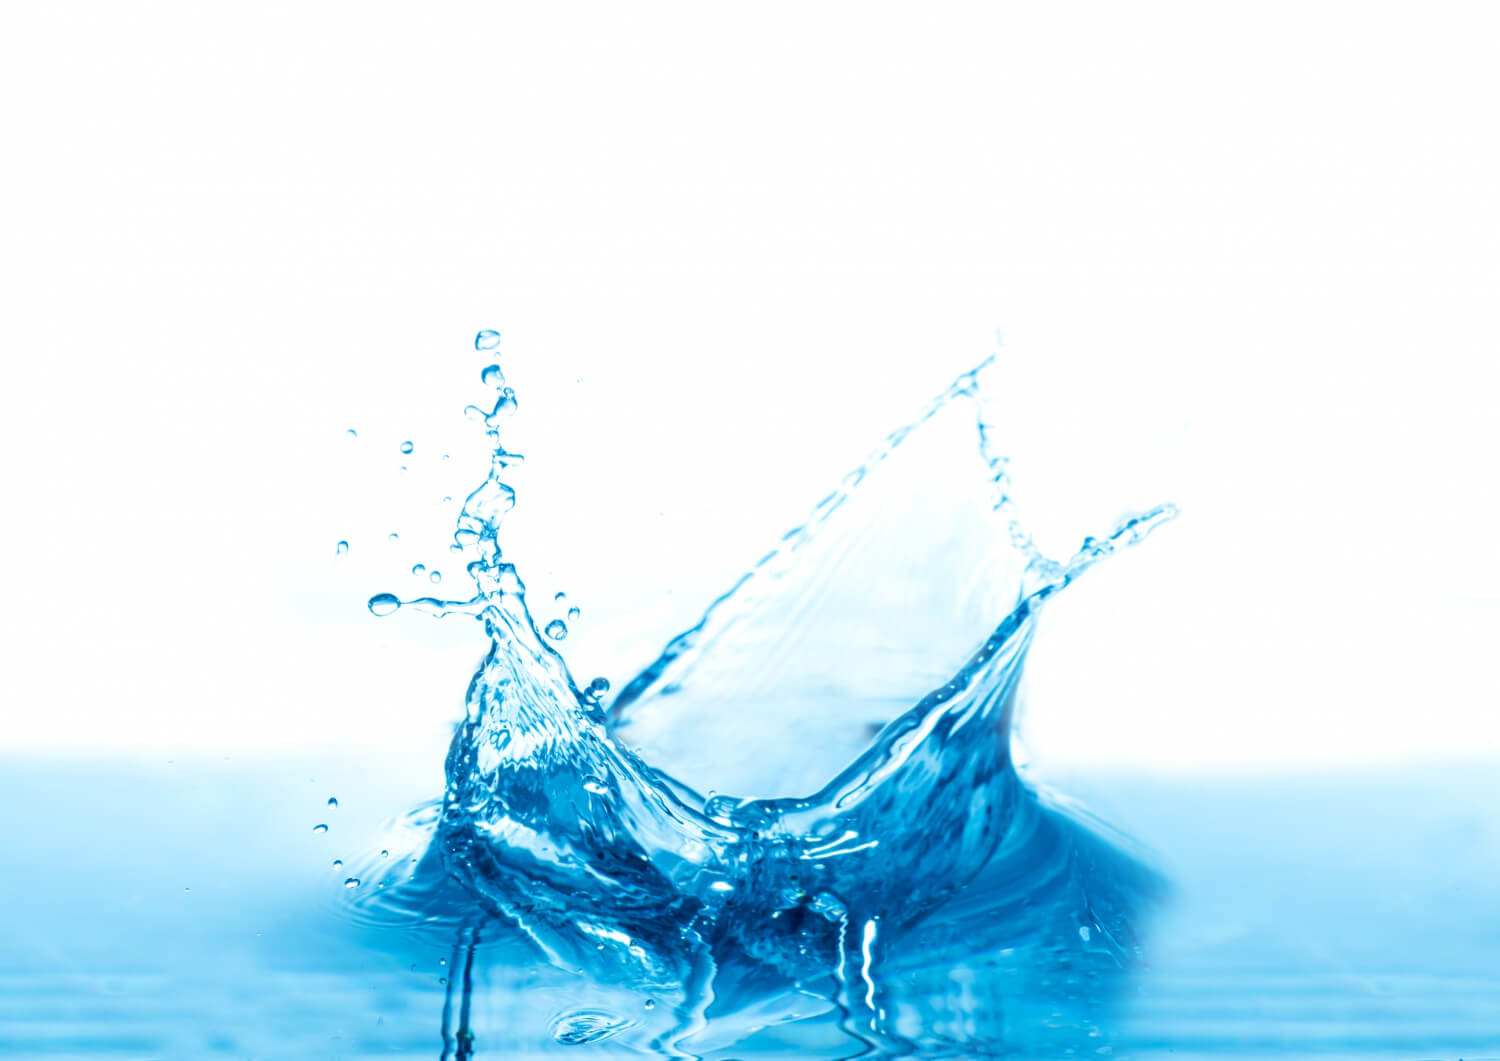 Mieux comprendre l'eau adoucie et l'intérêt des adoucisseurs d'eau